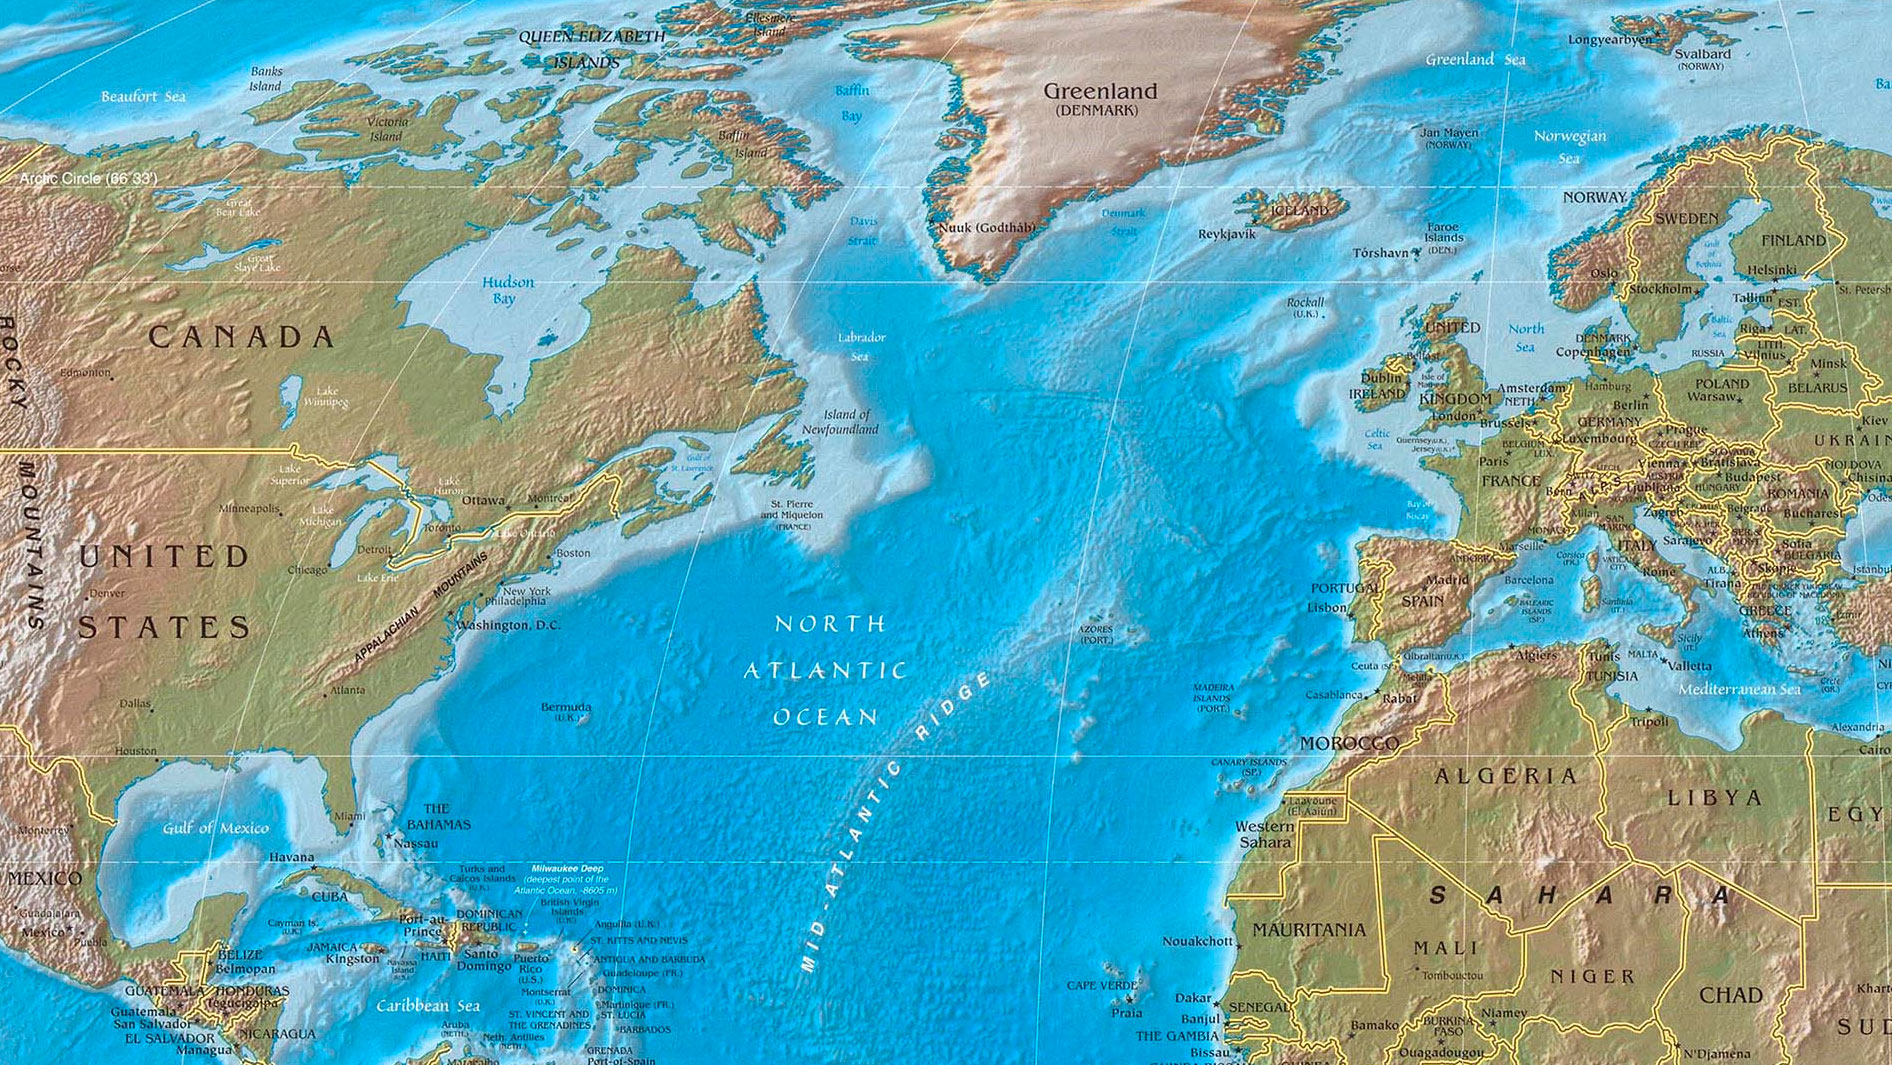 Фото атлантического океана на карте